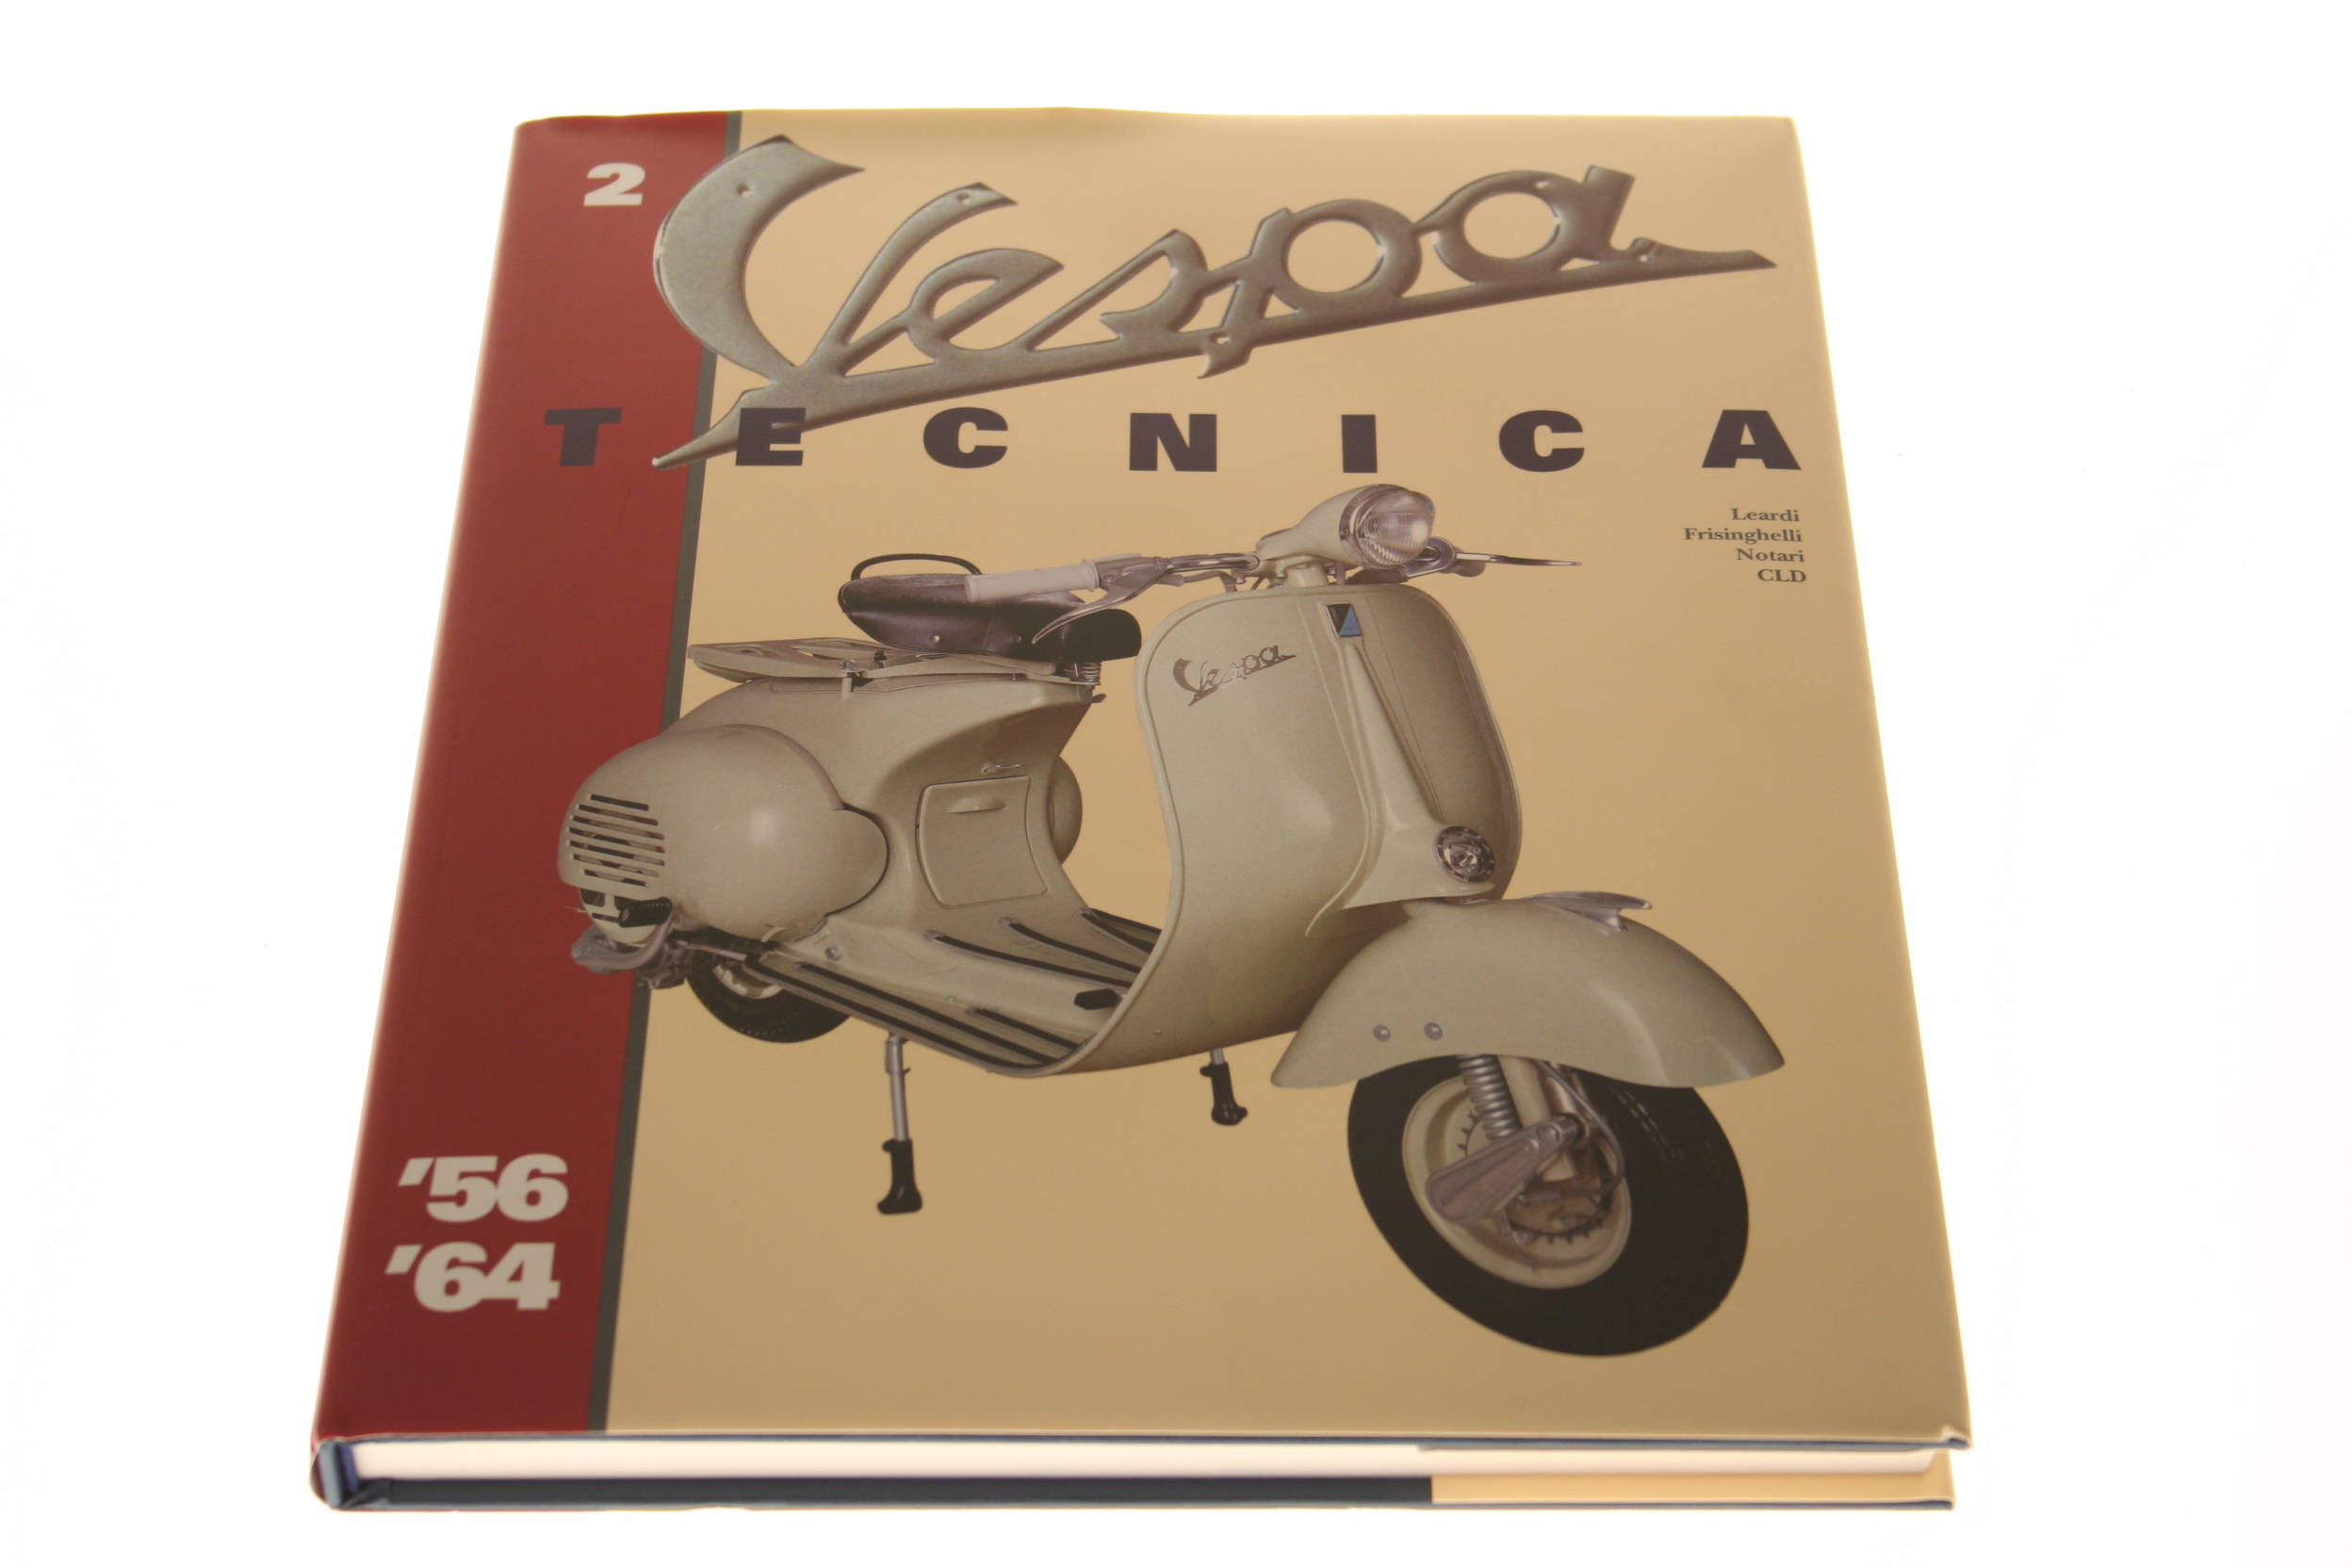 Buch Vespa "Tecnica" 2, von 1956-1964, deutsch